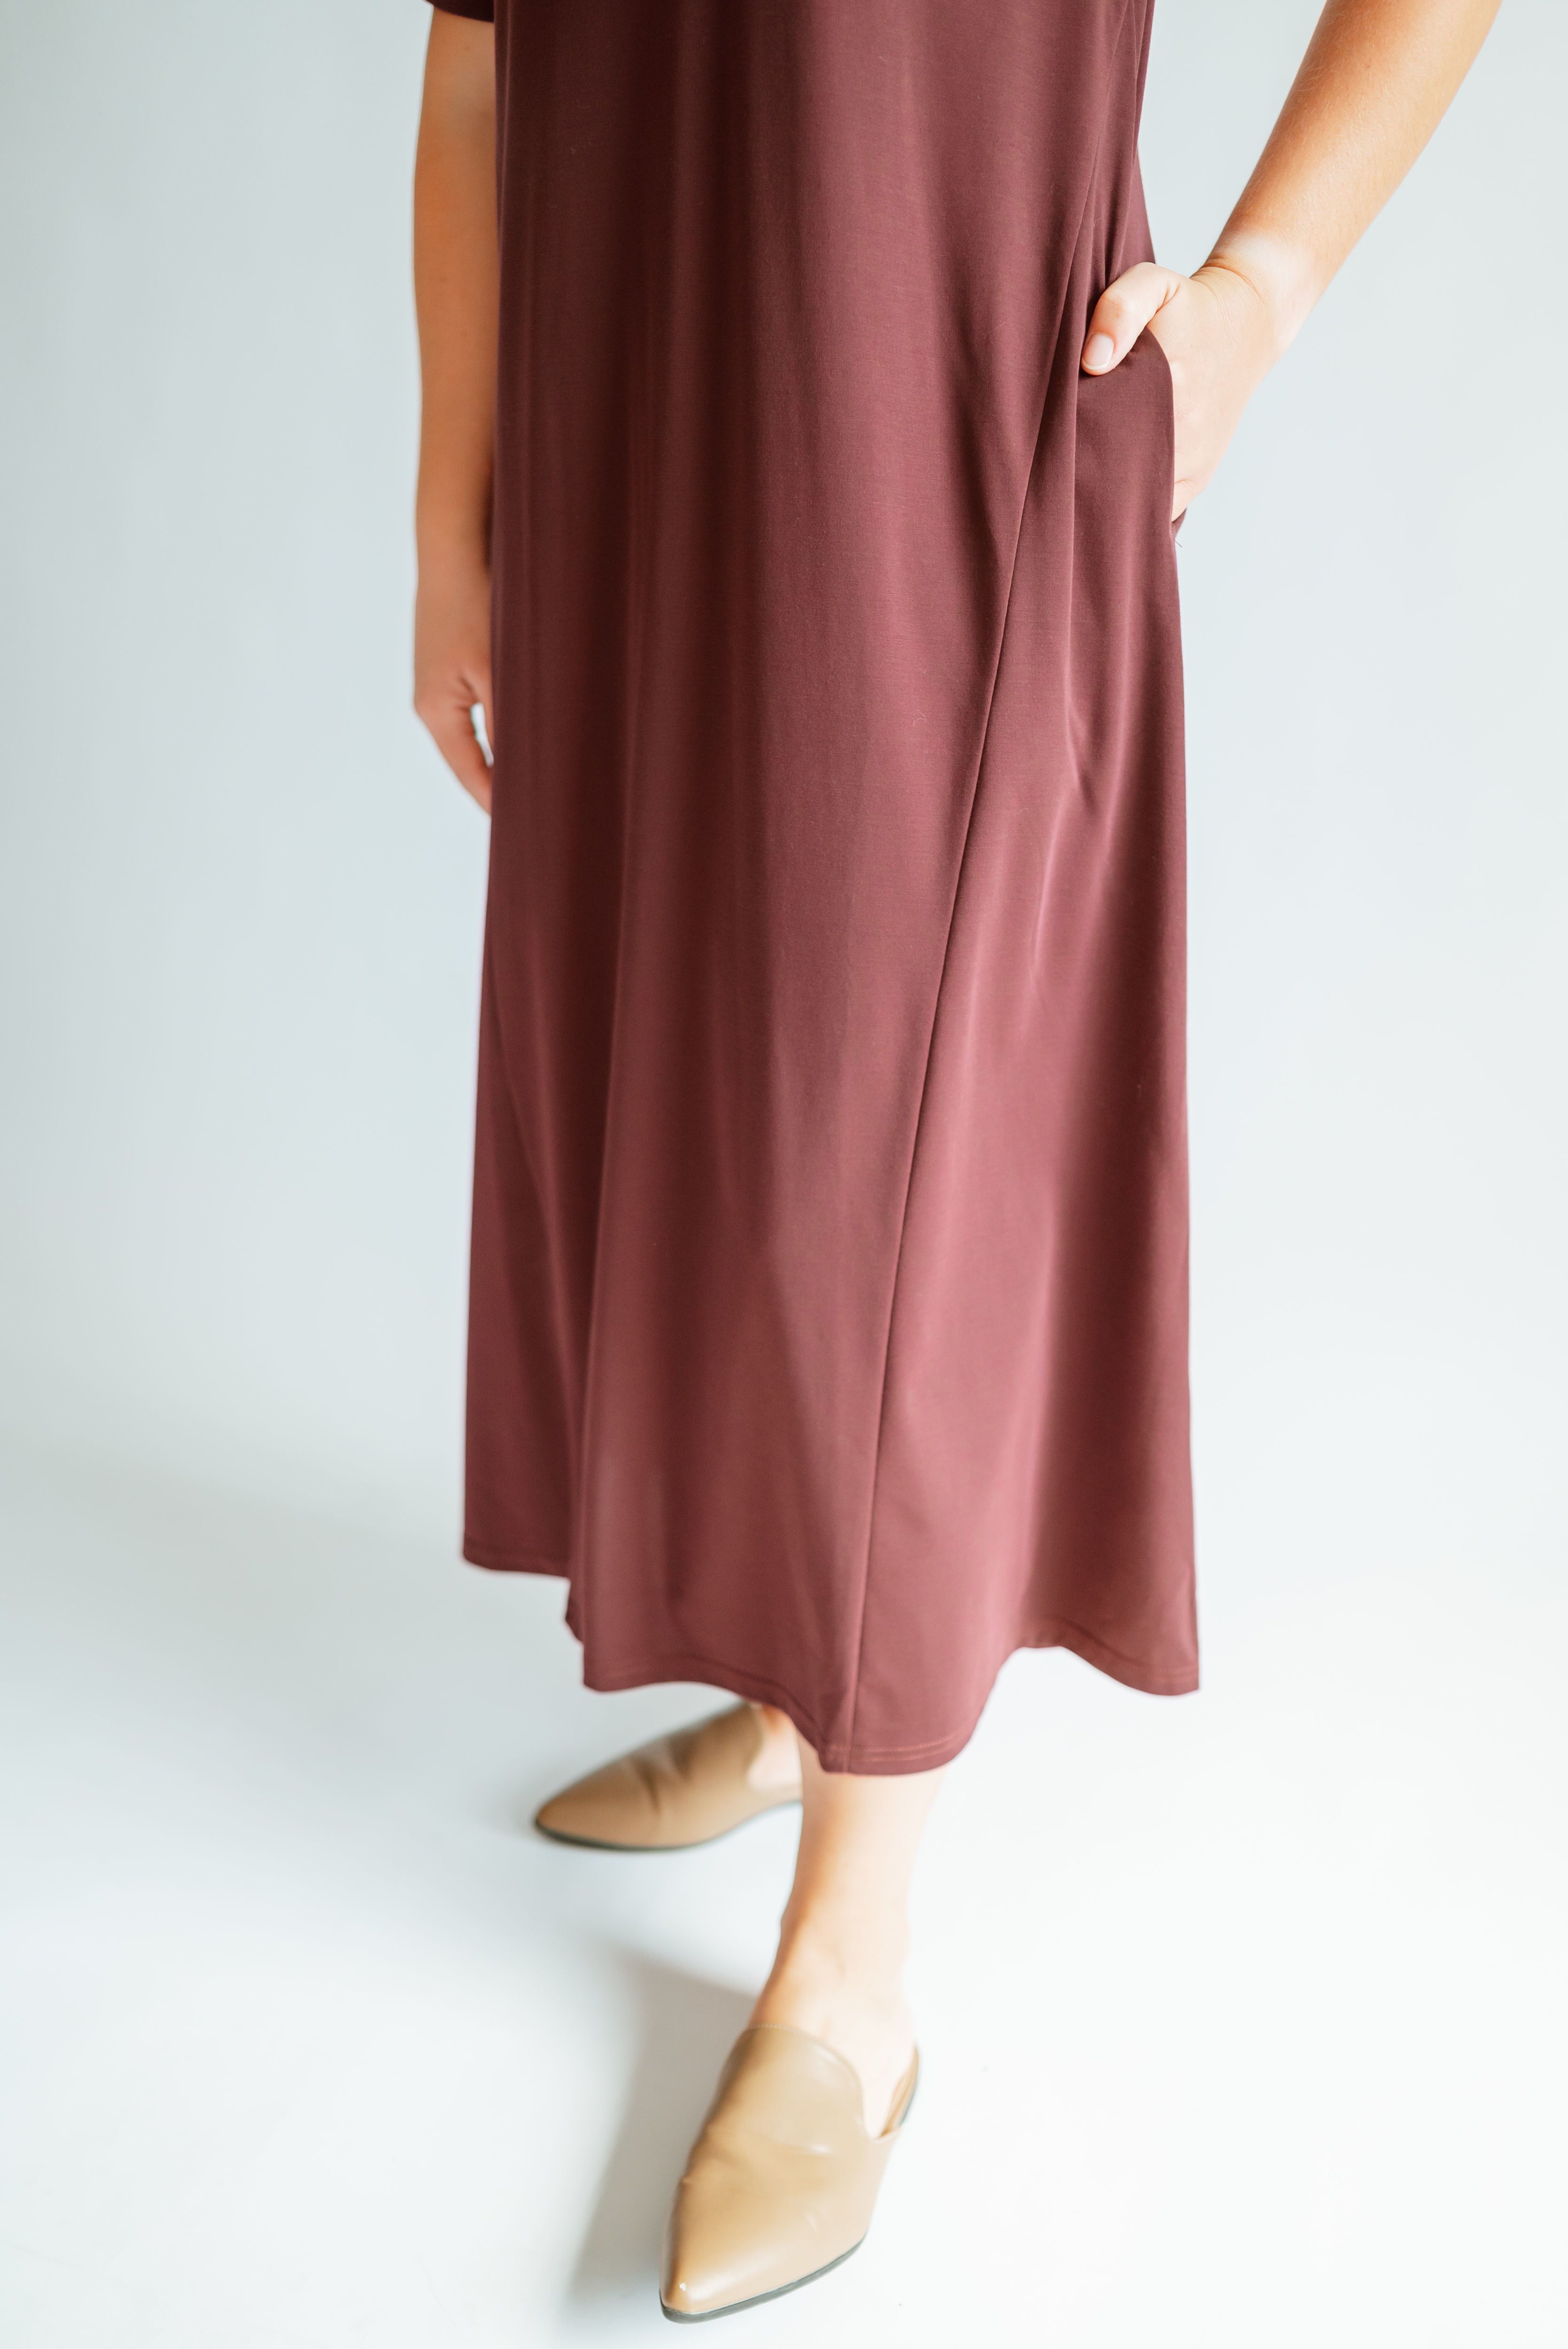 Jessica Knit Midi Dress in Maroon